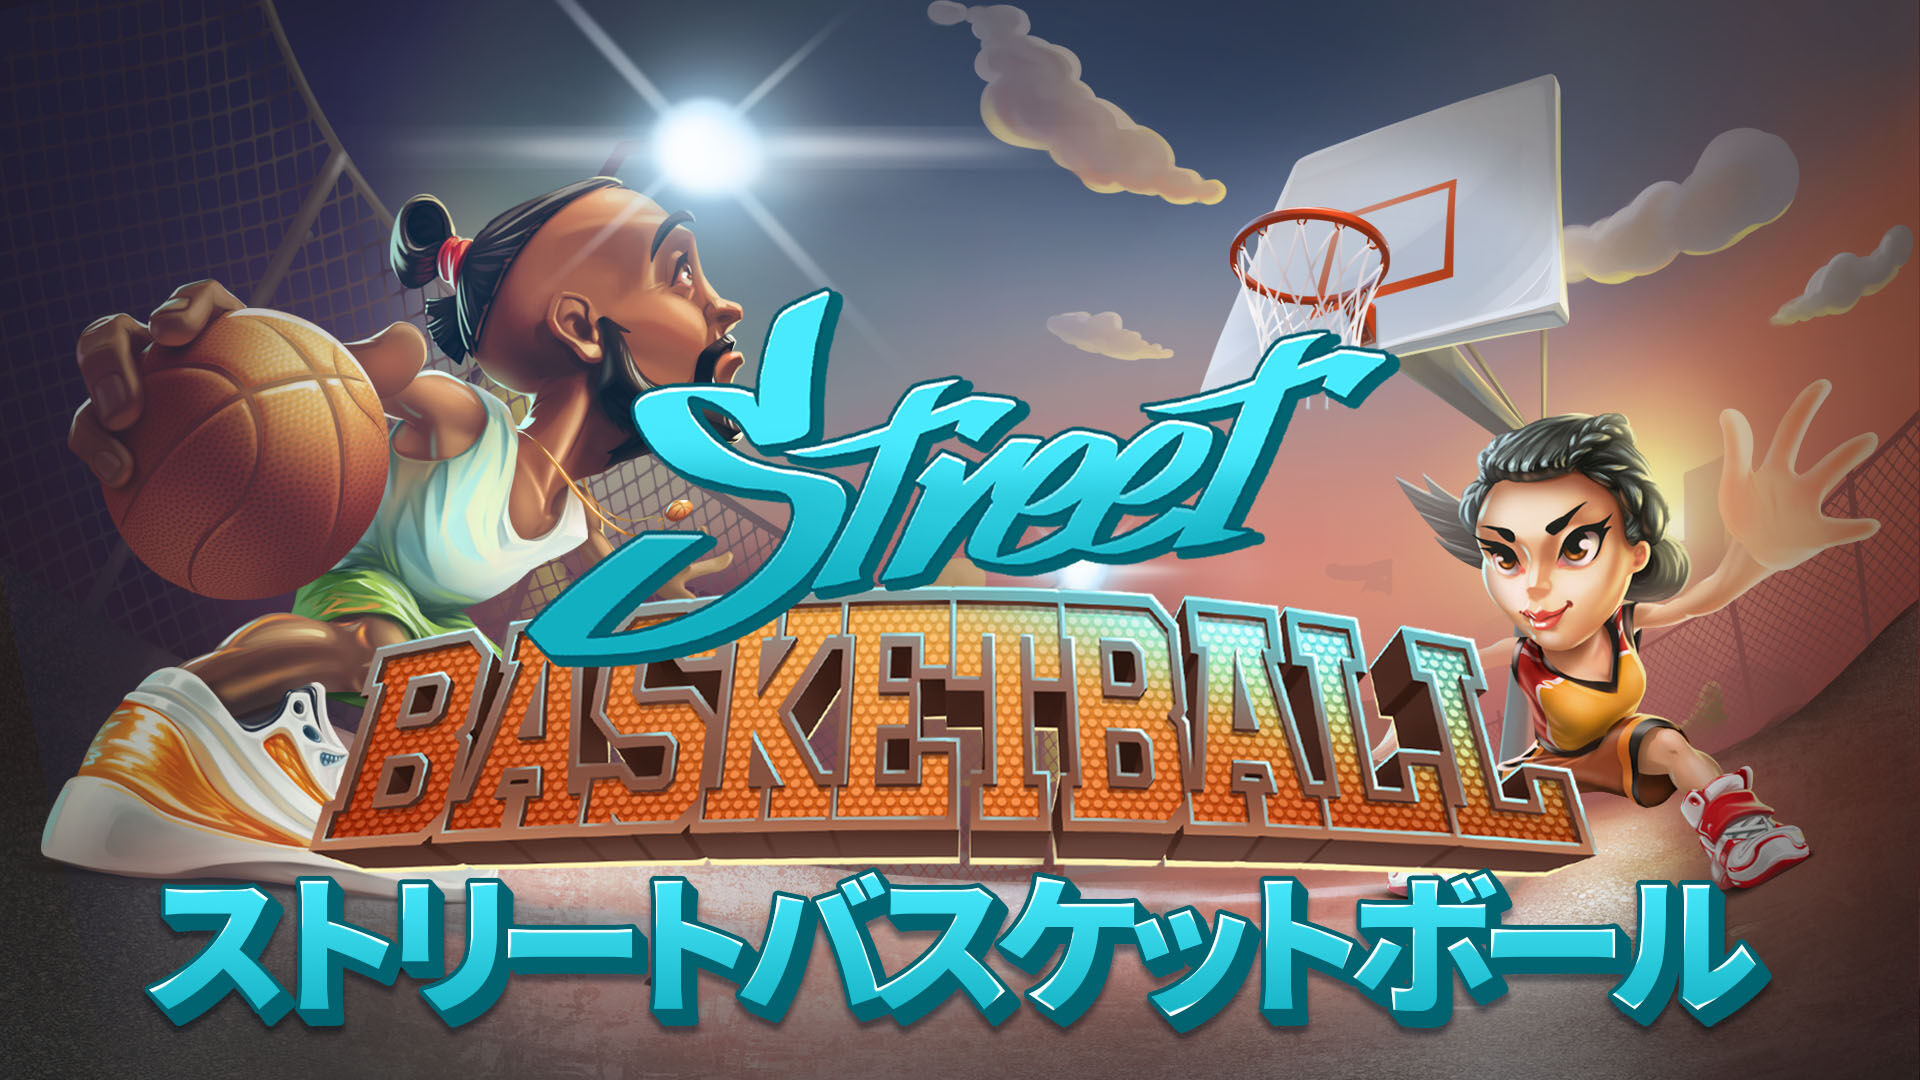 Street Basketball - ストリートバスケットボール ダウンロード版 | My 